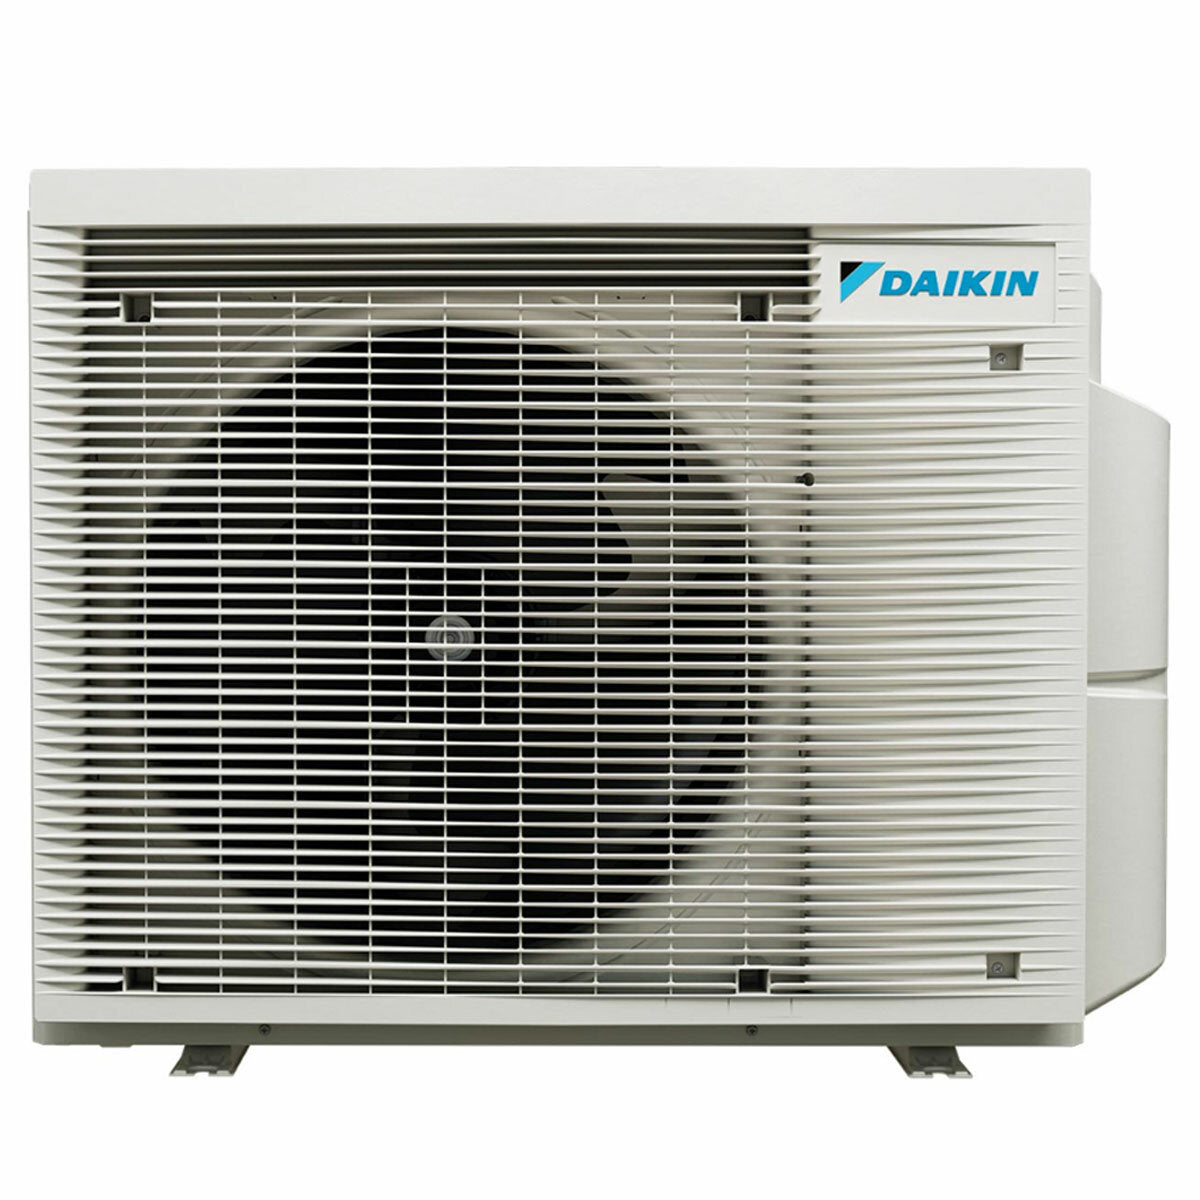 Daikin Emura 3 trial split air conditioner 7000+9000+15000 BTU inverter A++ wifi outdoor unit 5 kW Black